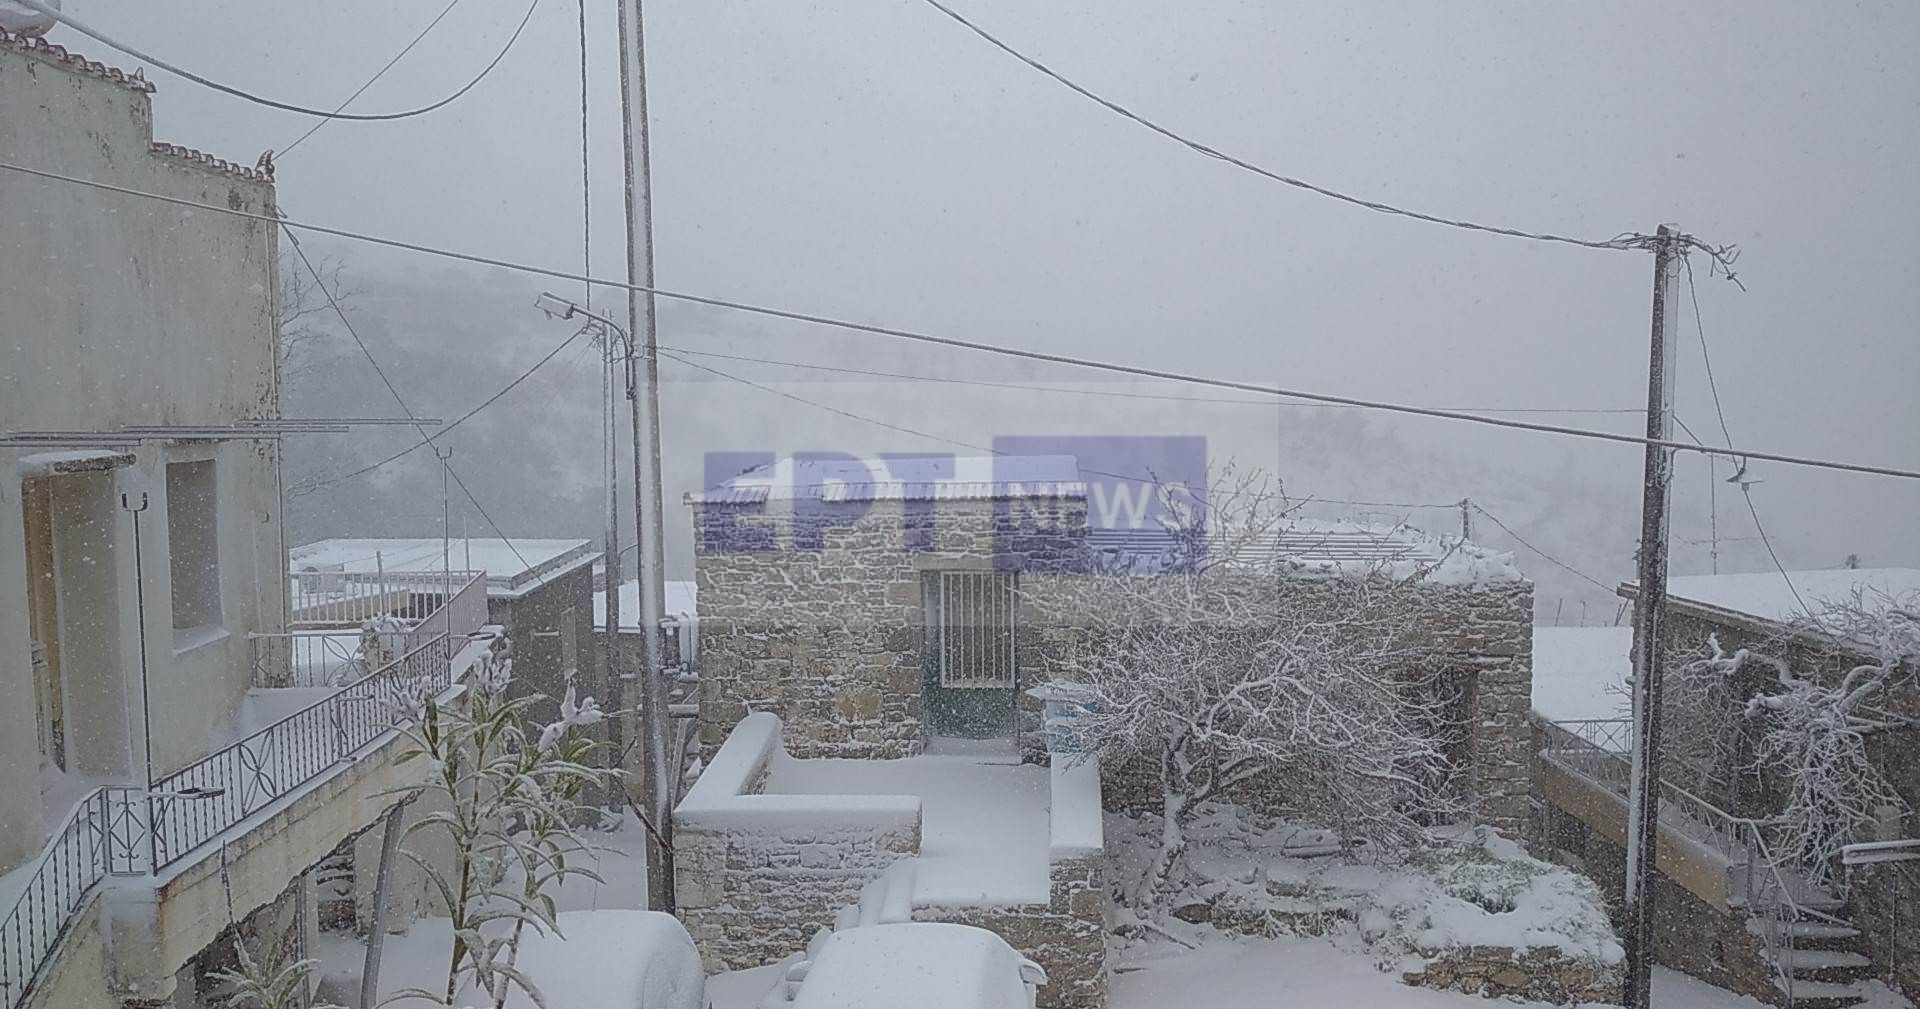 Χίος: Χιόνι και στην πόλη, προβλήματα στο οδικό δίκτυο στο χωριό Κατάβαση